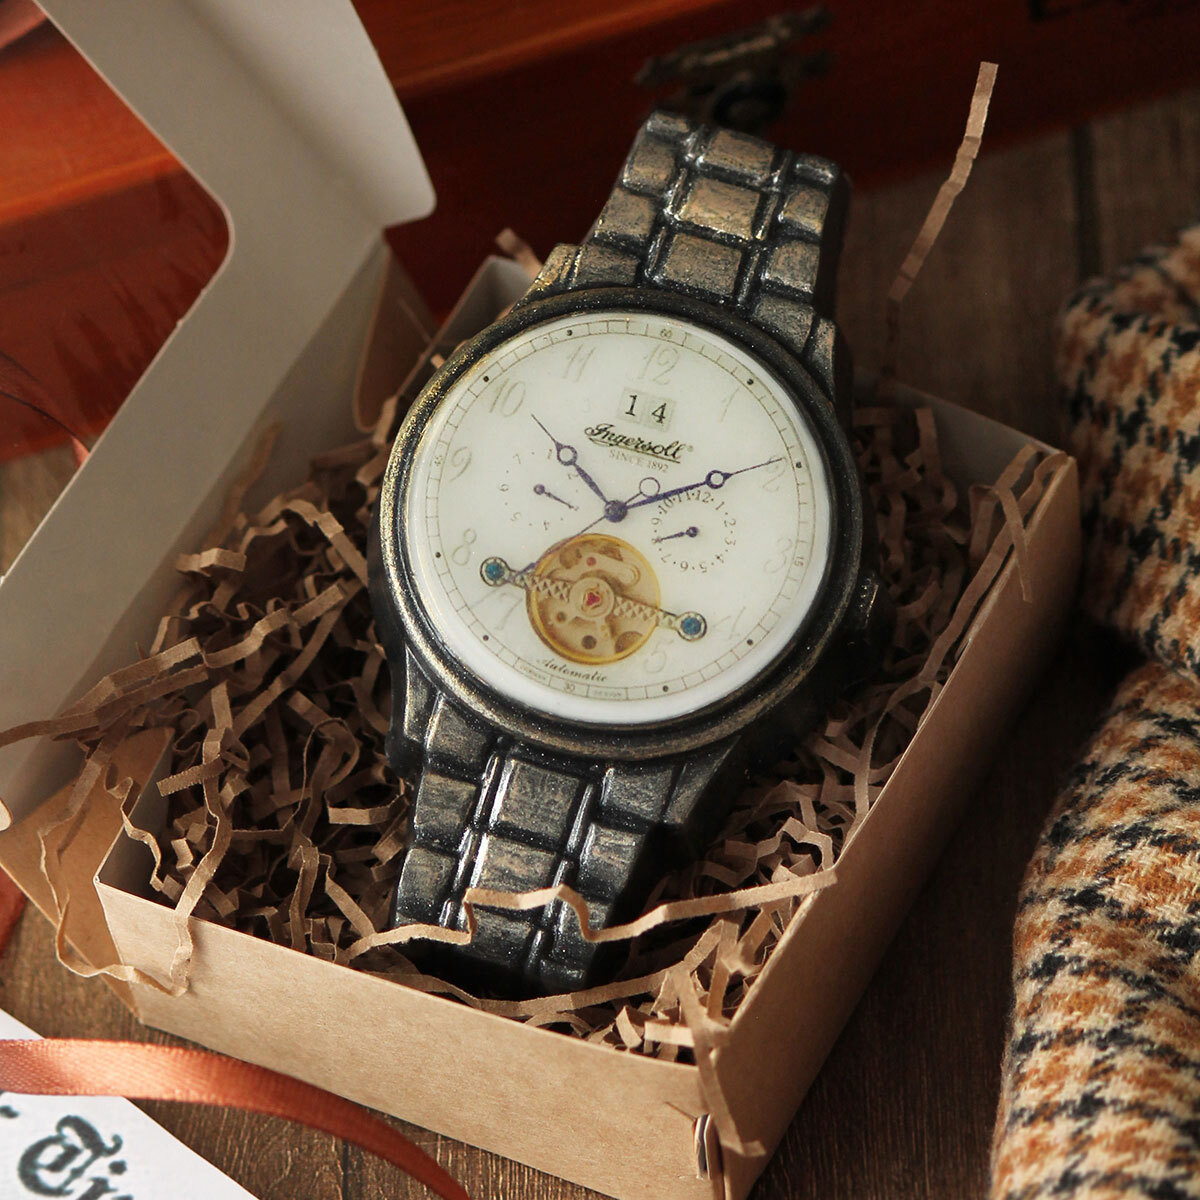 Оригинальный браслет для часов своими руками (фото)